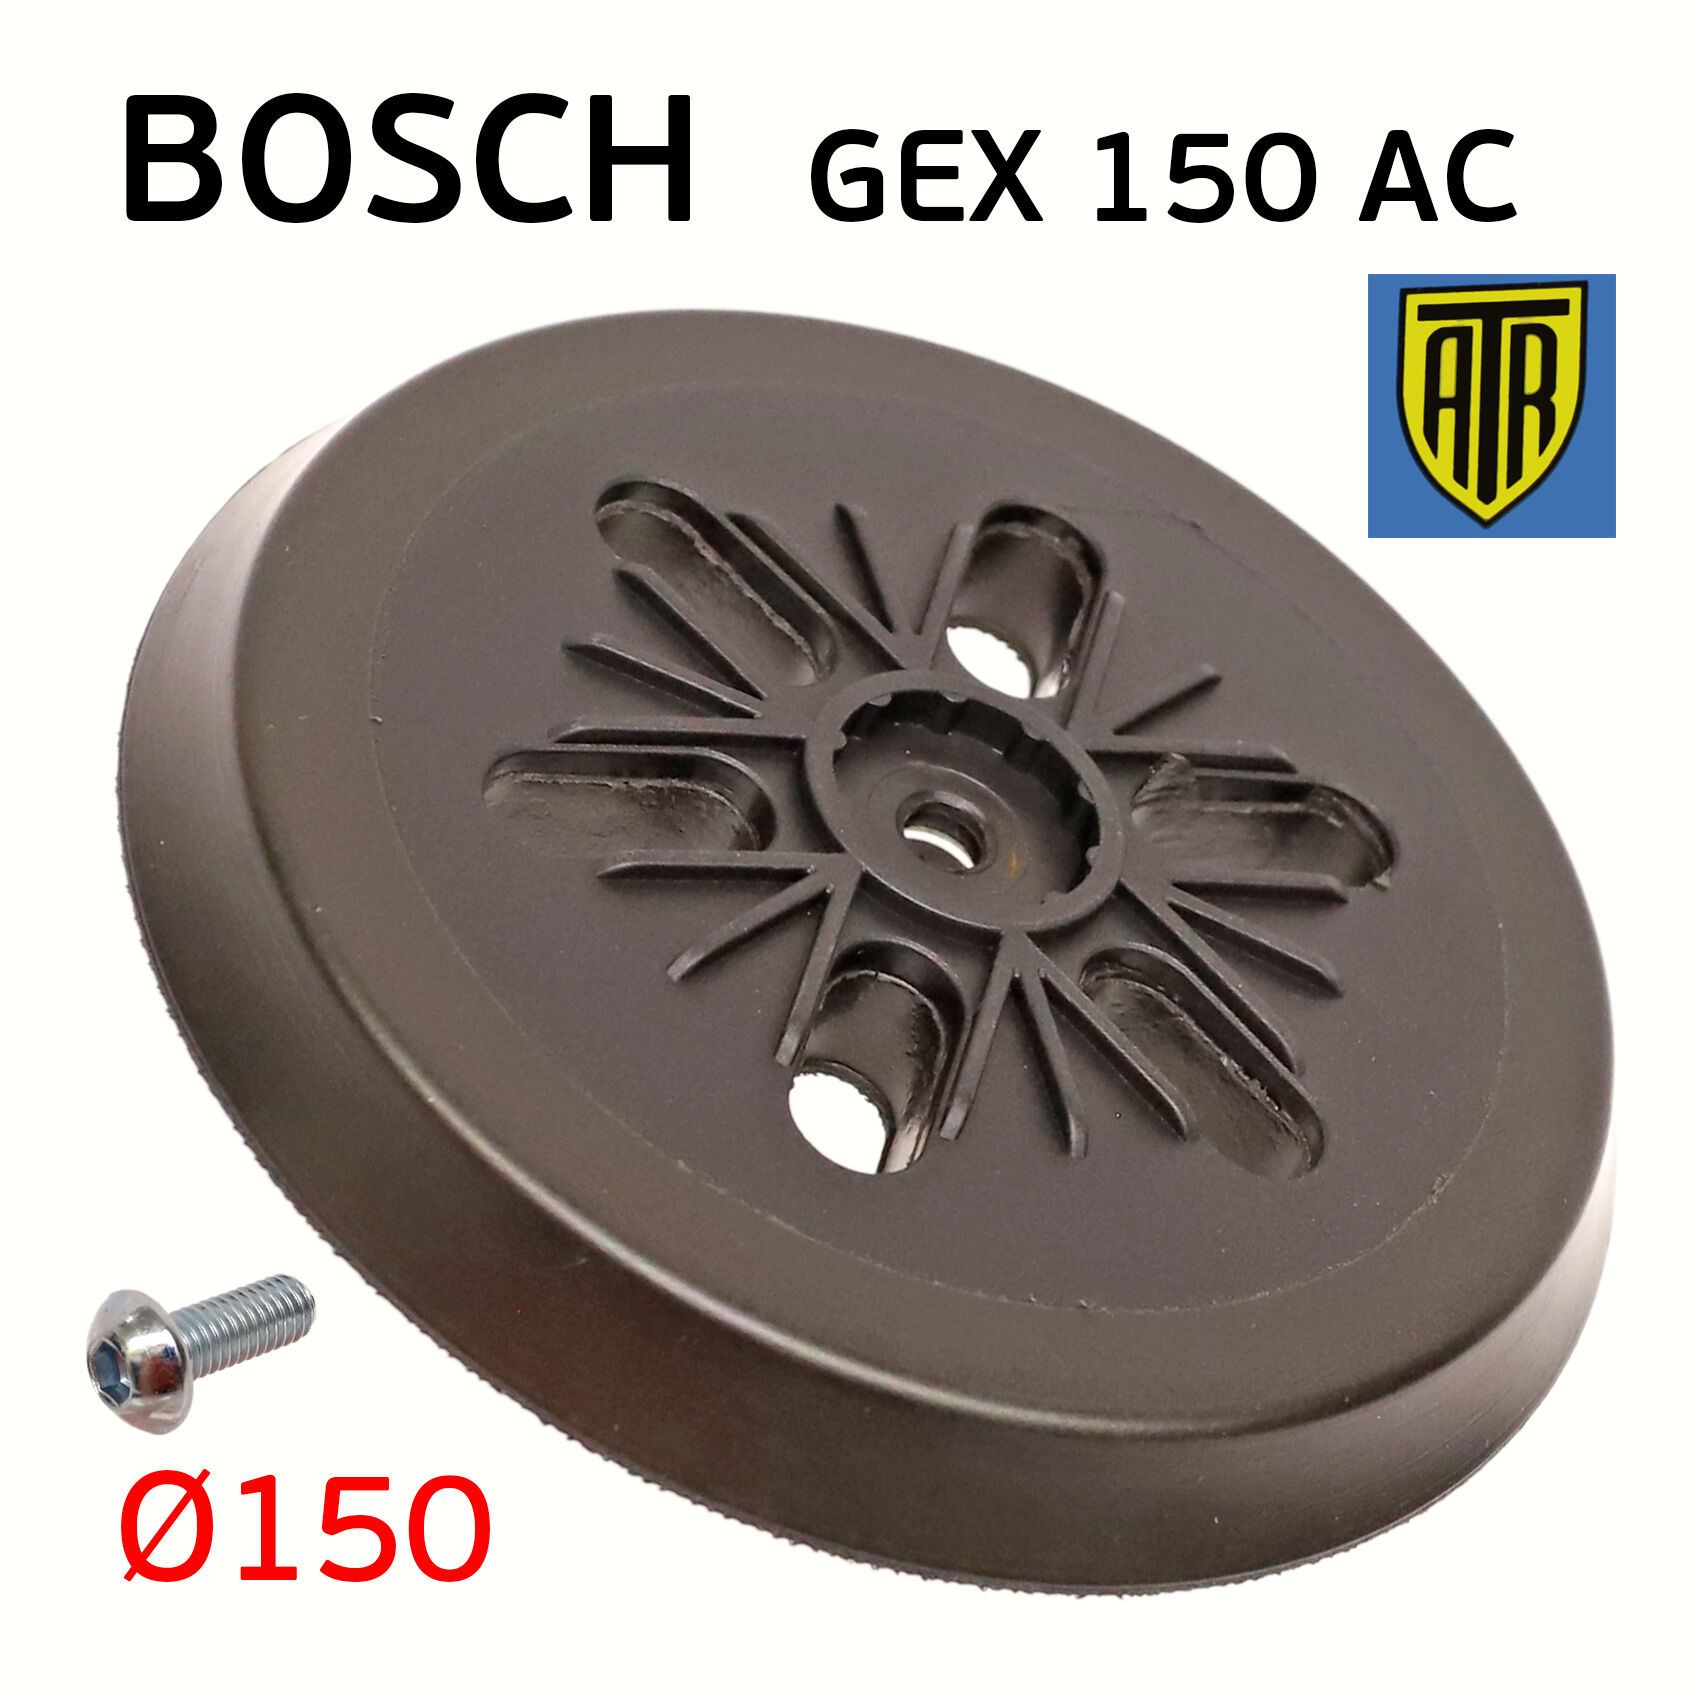 Подошва ATR для Bosch GEX 150 AC тарелка шлифовальной машинки с винтом М8